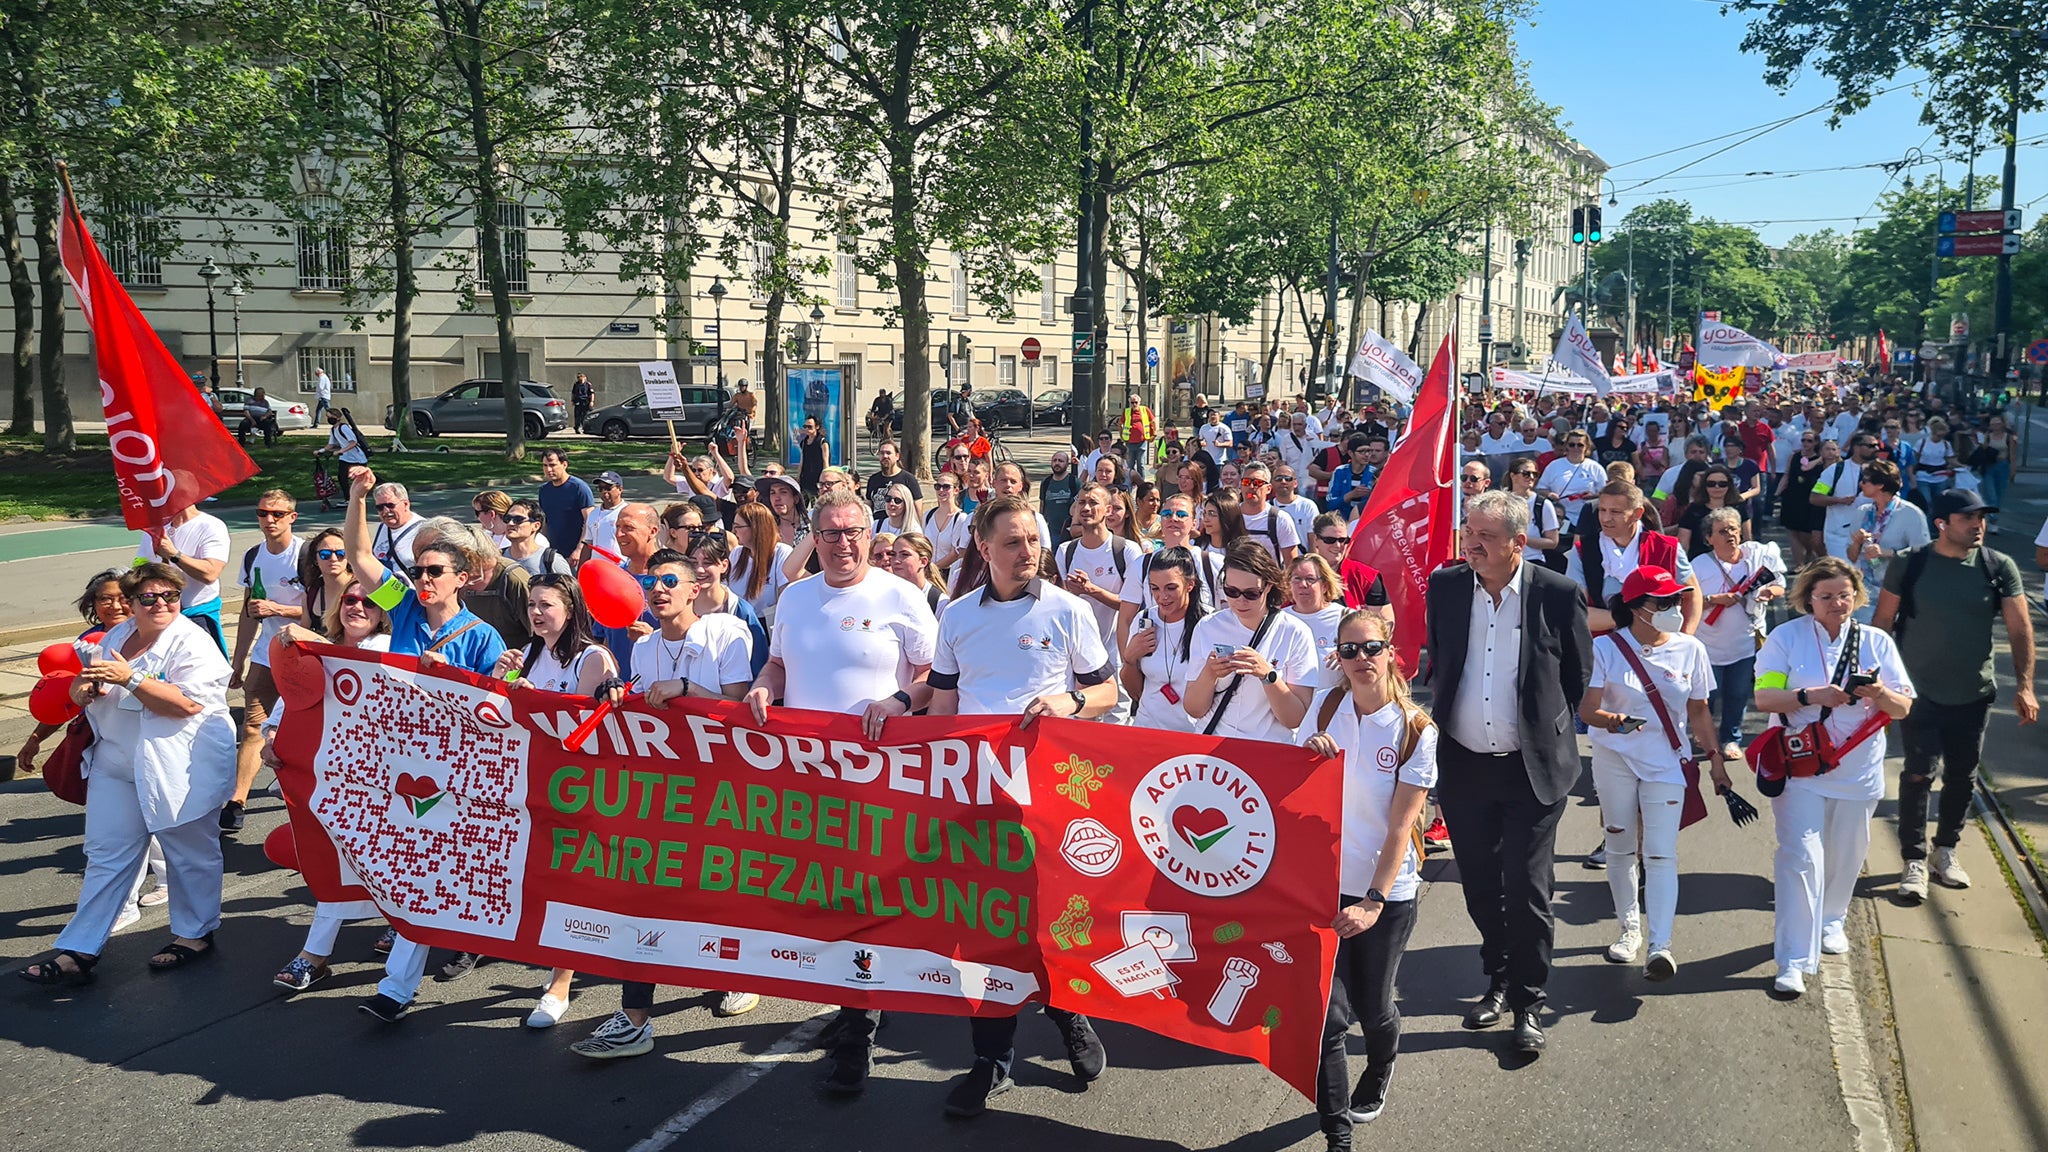 Alleine bei der großen Demonstration in Wien haben 10.000 TeilnehmerInnen klar gemacht, dass es jetzt schnell weitergehen muss.